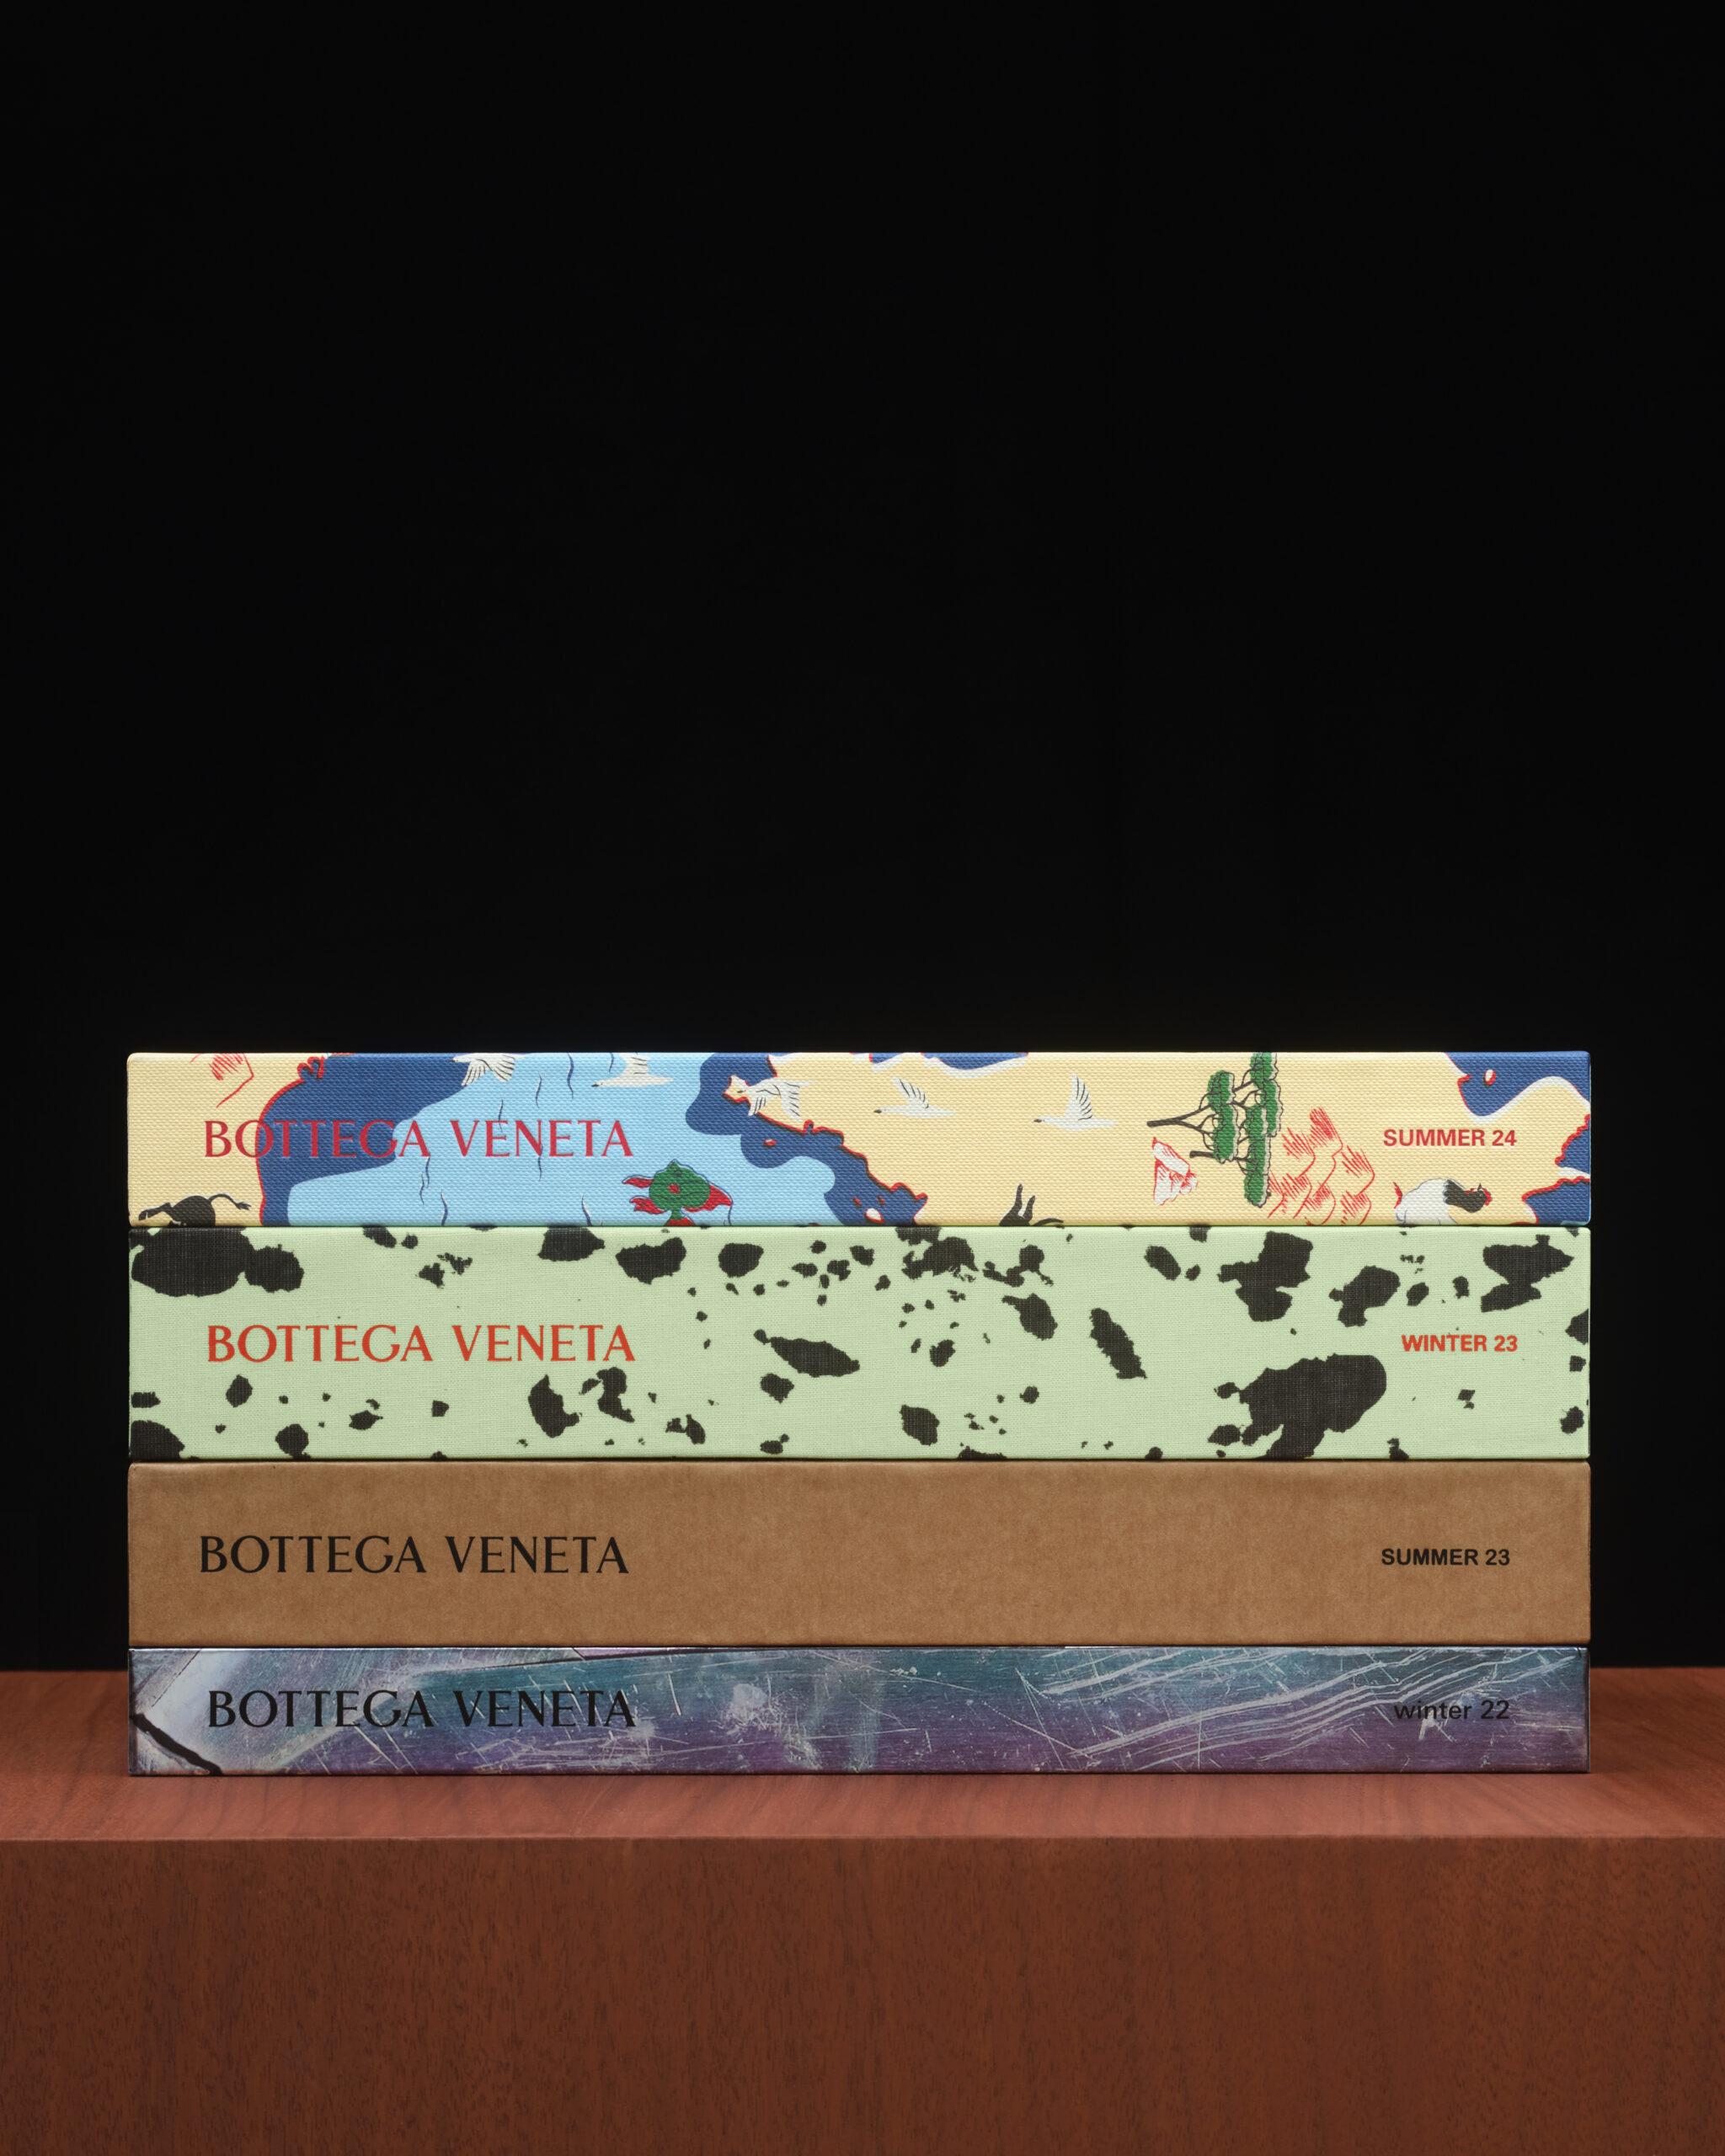 Bottega Veneta Unveils Summer 24 Fanzine – A Global Journey 